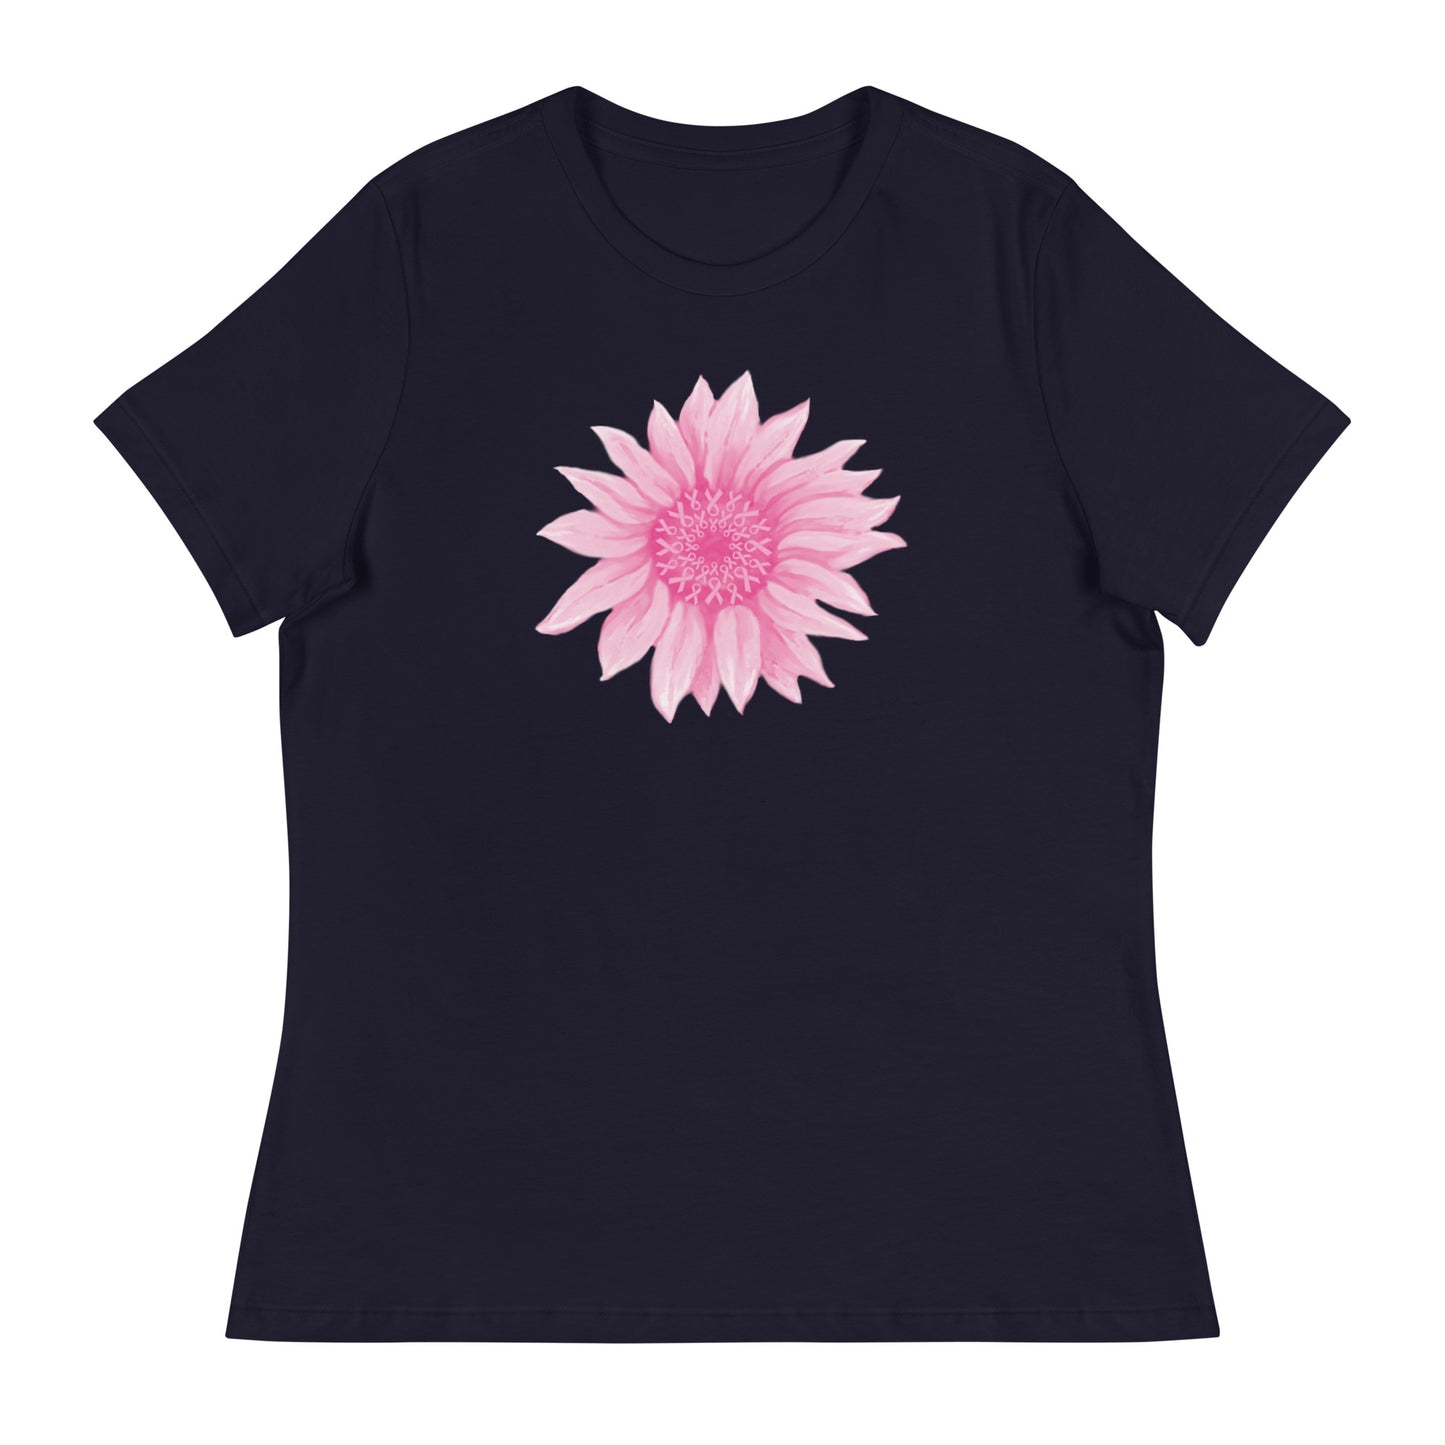 Pink Ribbon Sunflower Women's Relaxed T-Shirt